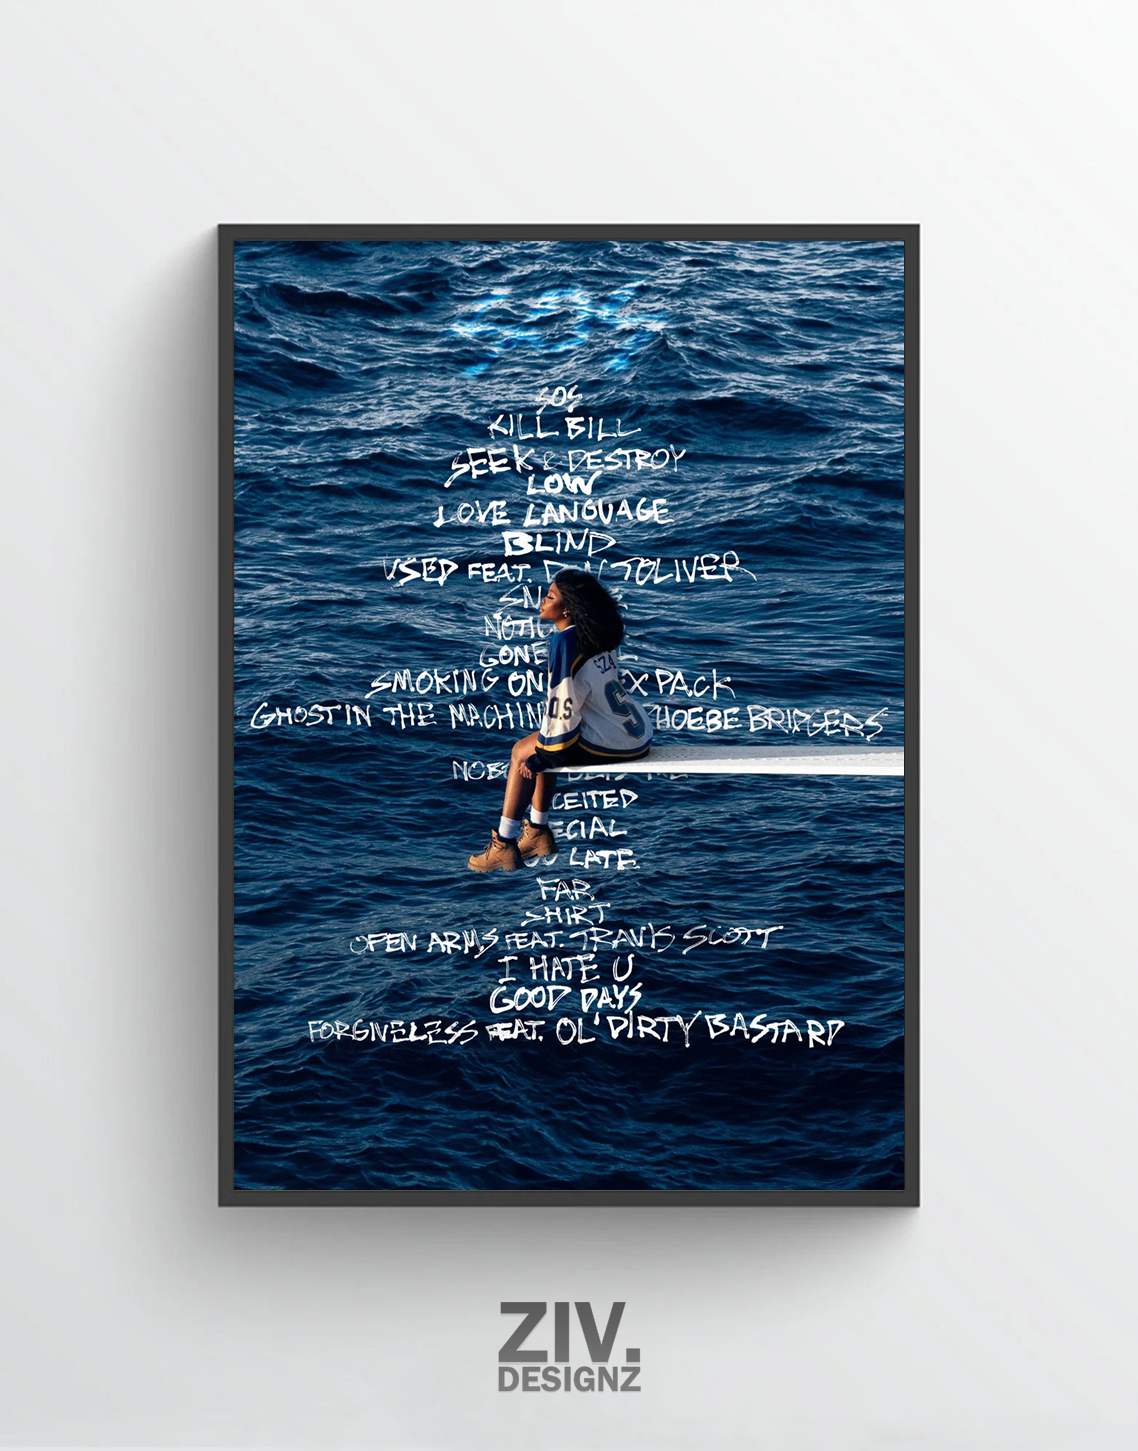 SZA ‘SOS’ Premium Album Music Poster | Cover Artwork and Tracklist